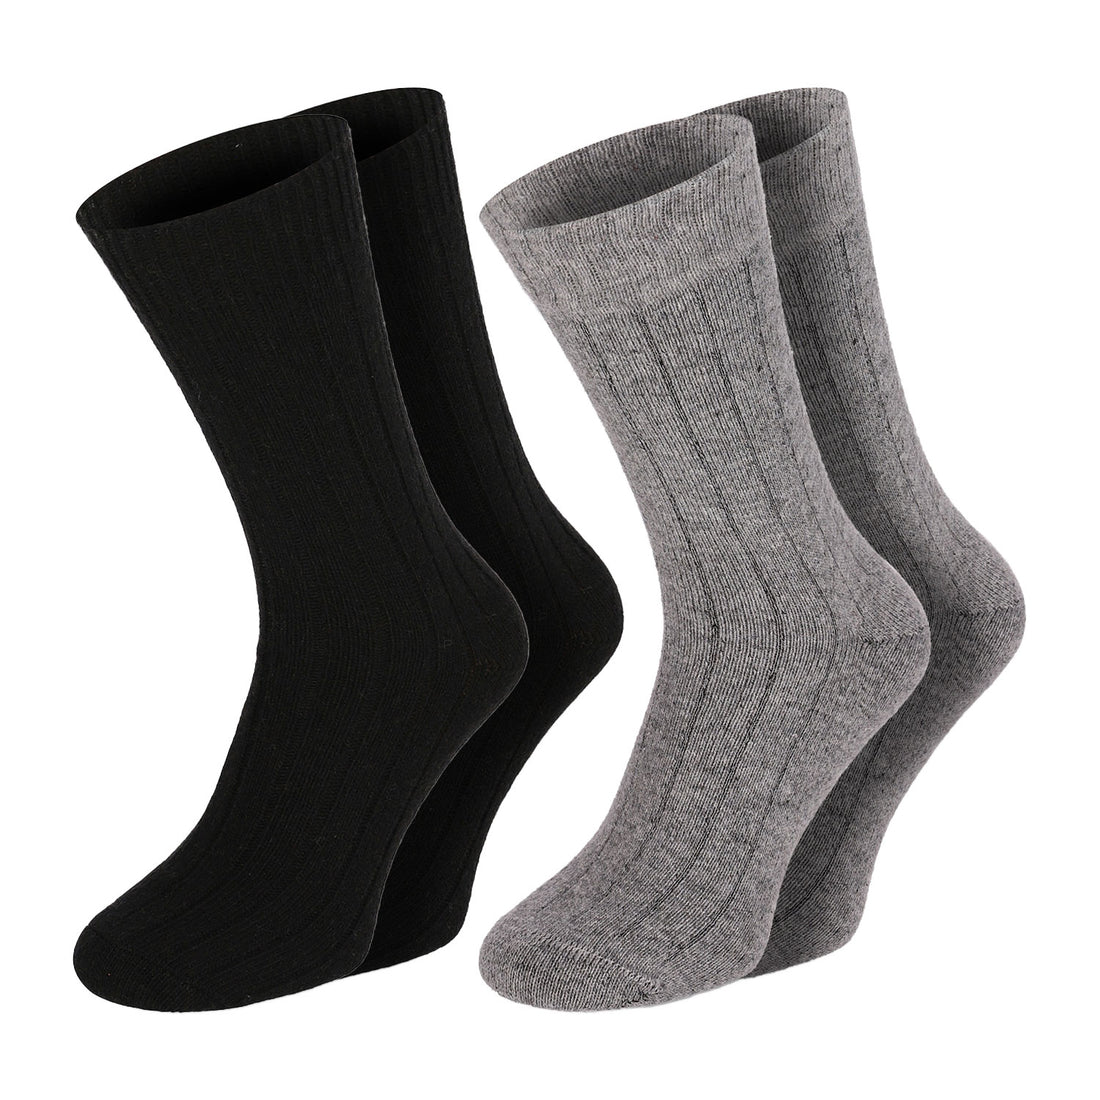 ChiliLifestyle Socken Winter Merino Wolle Damen Herren Warm 2 Paar